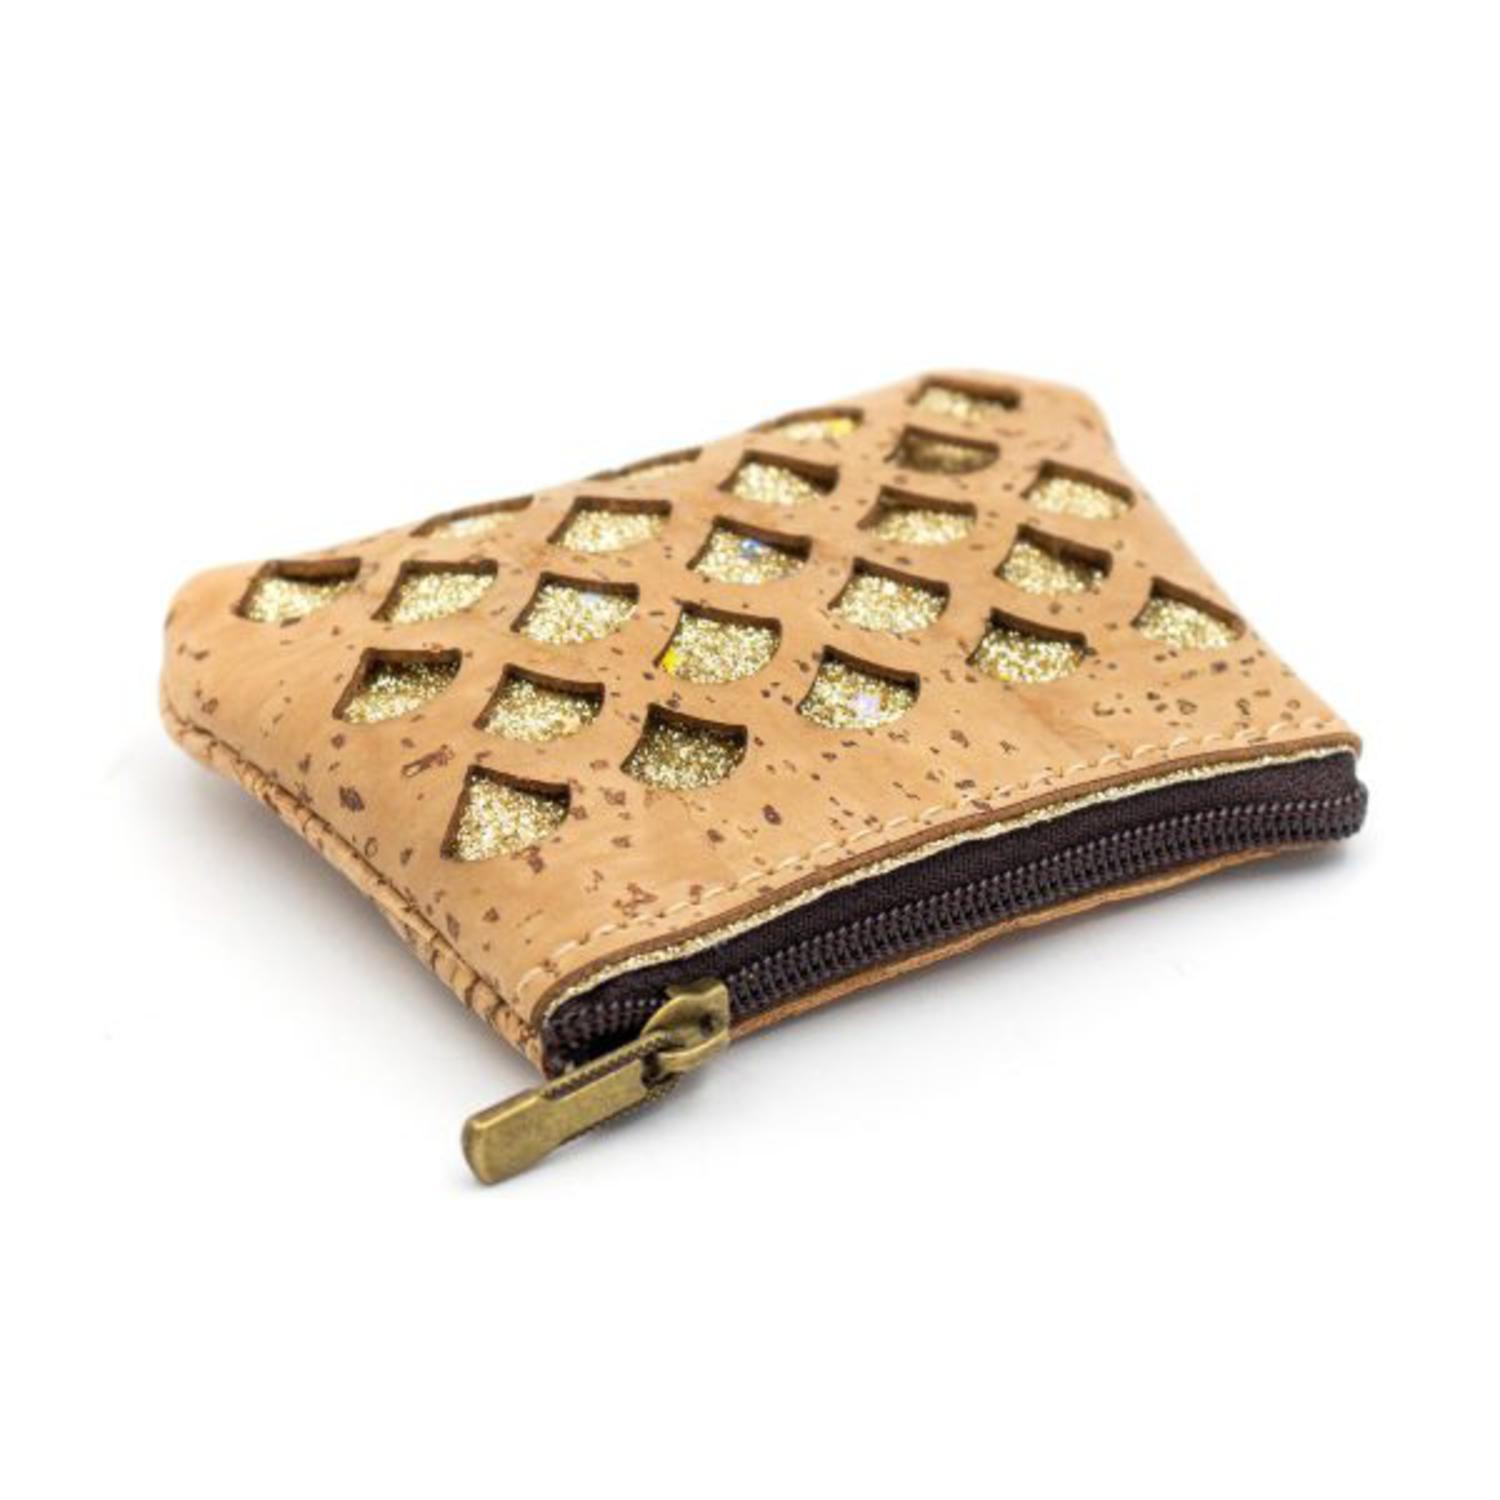 Majhna denarnica iz plute okrašena z zlato sijočo tkanino